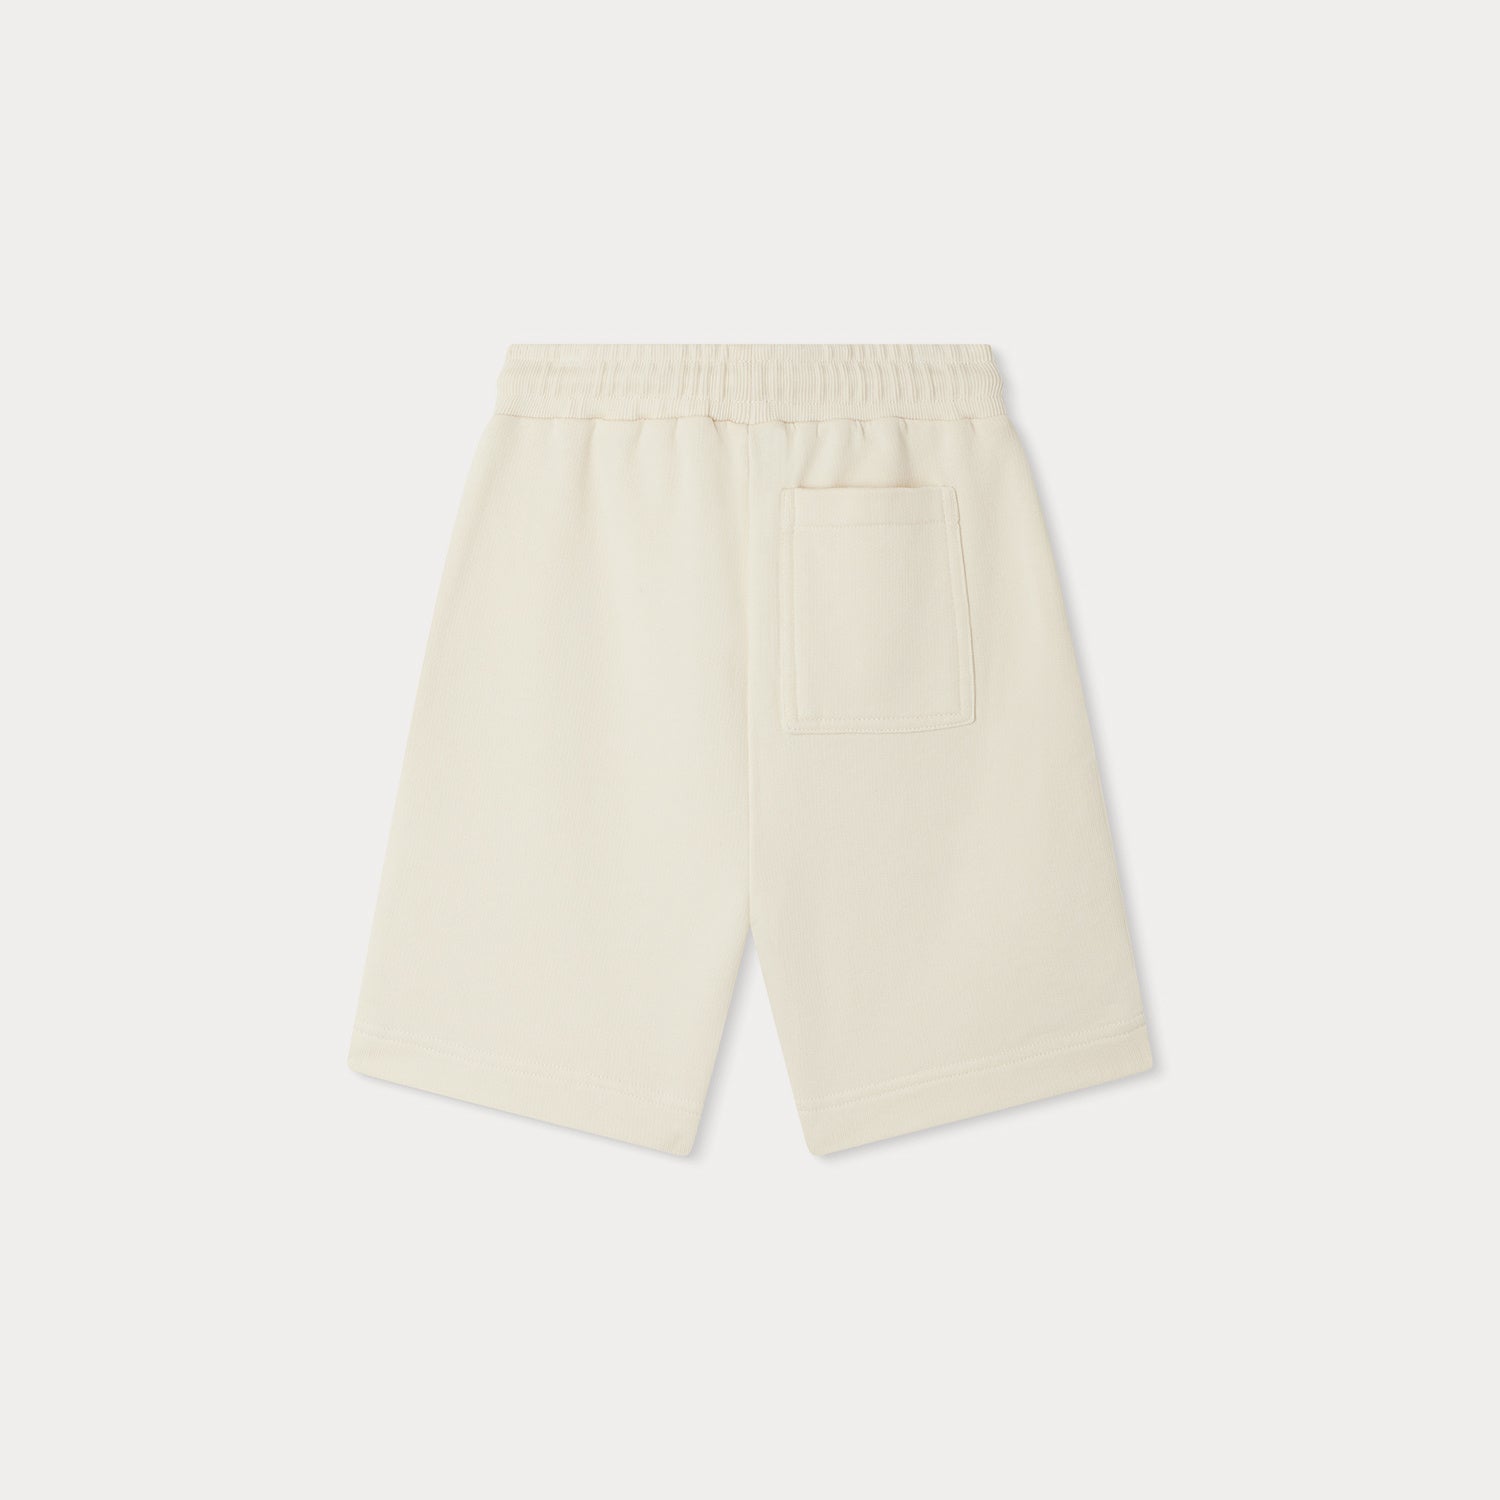 Boys White Cotton Shorts